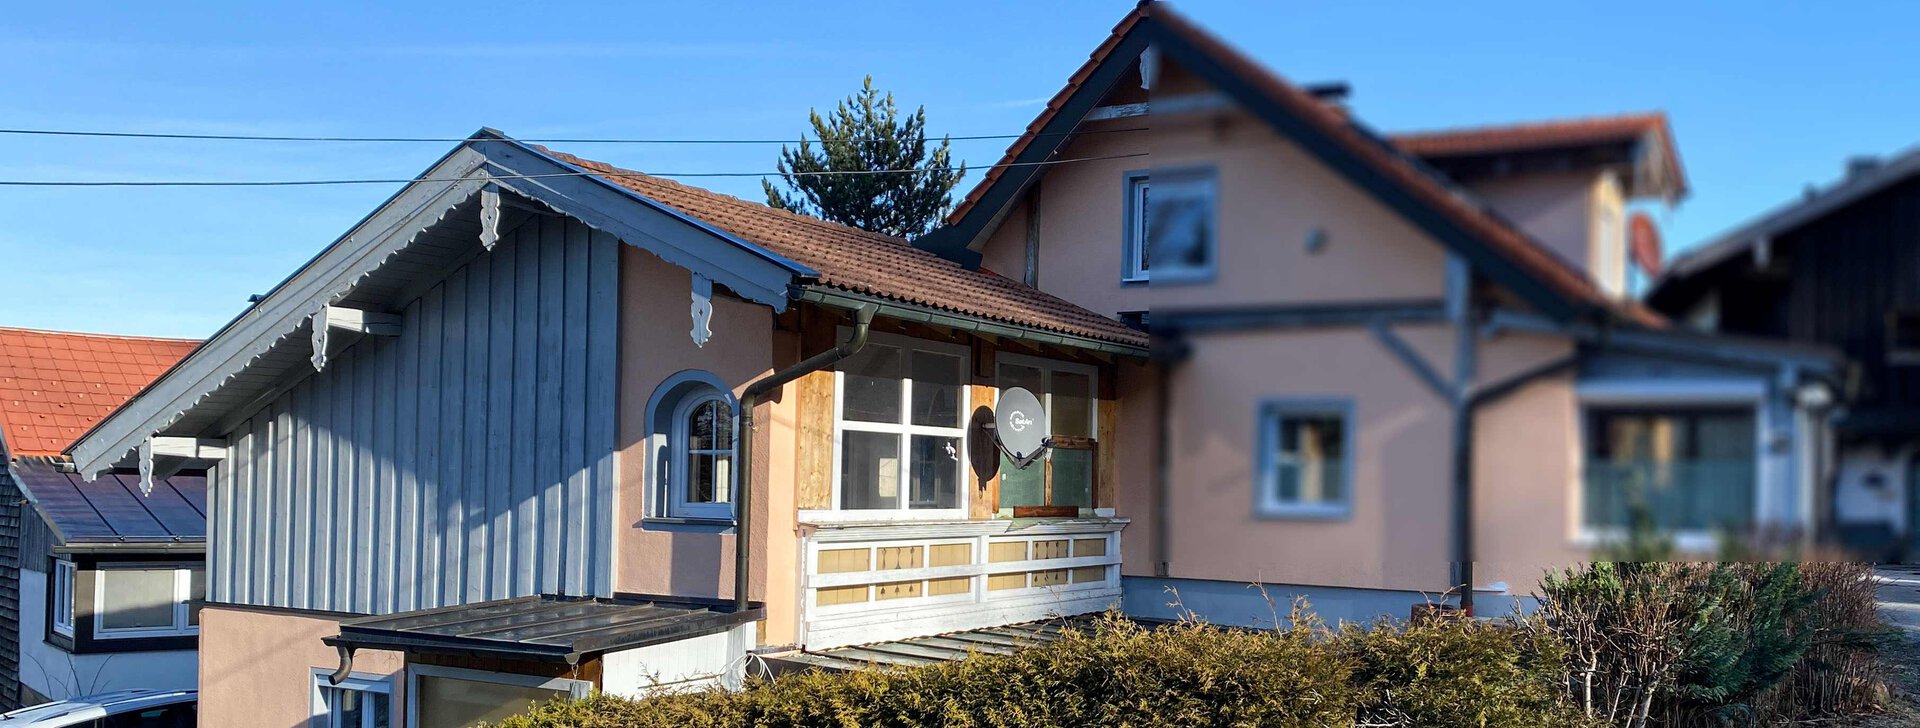 Außenansicht, 3-Zimmer-Wohnung in Neukirchen, Immobilie kaufen, Neukirchen a. Teisenberg | © HausBauHaus GmbH 